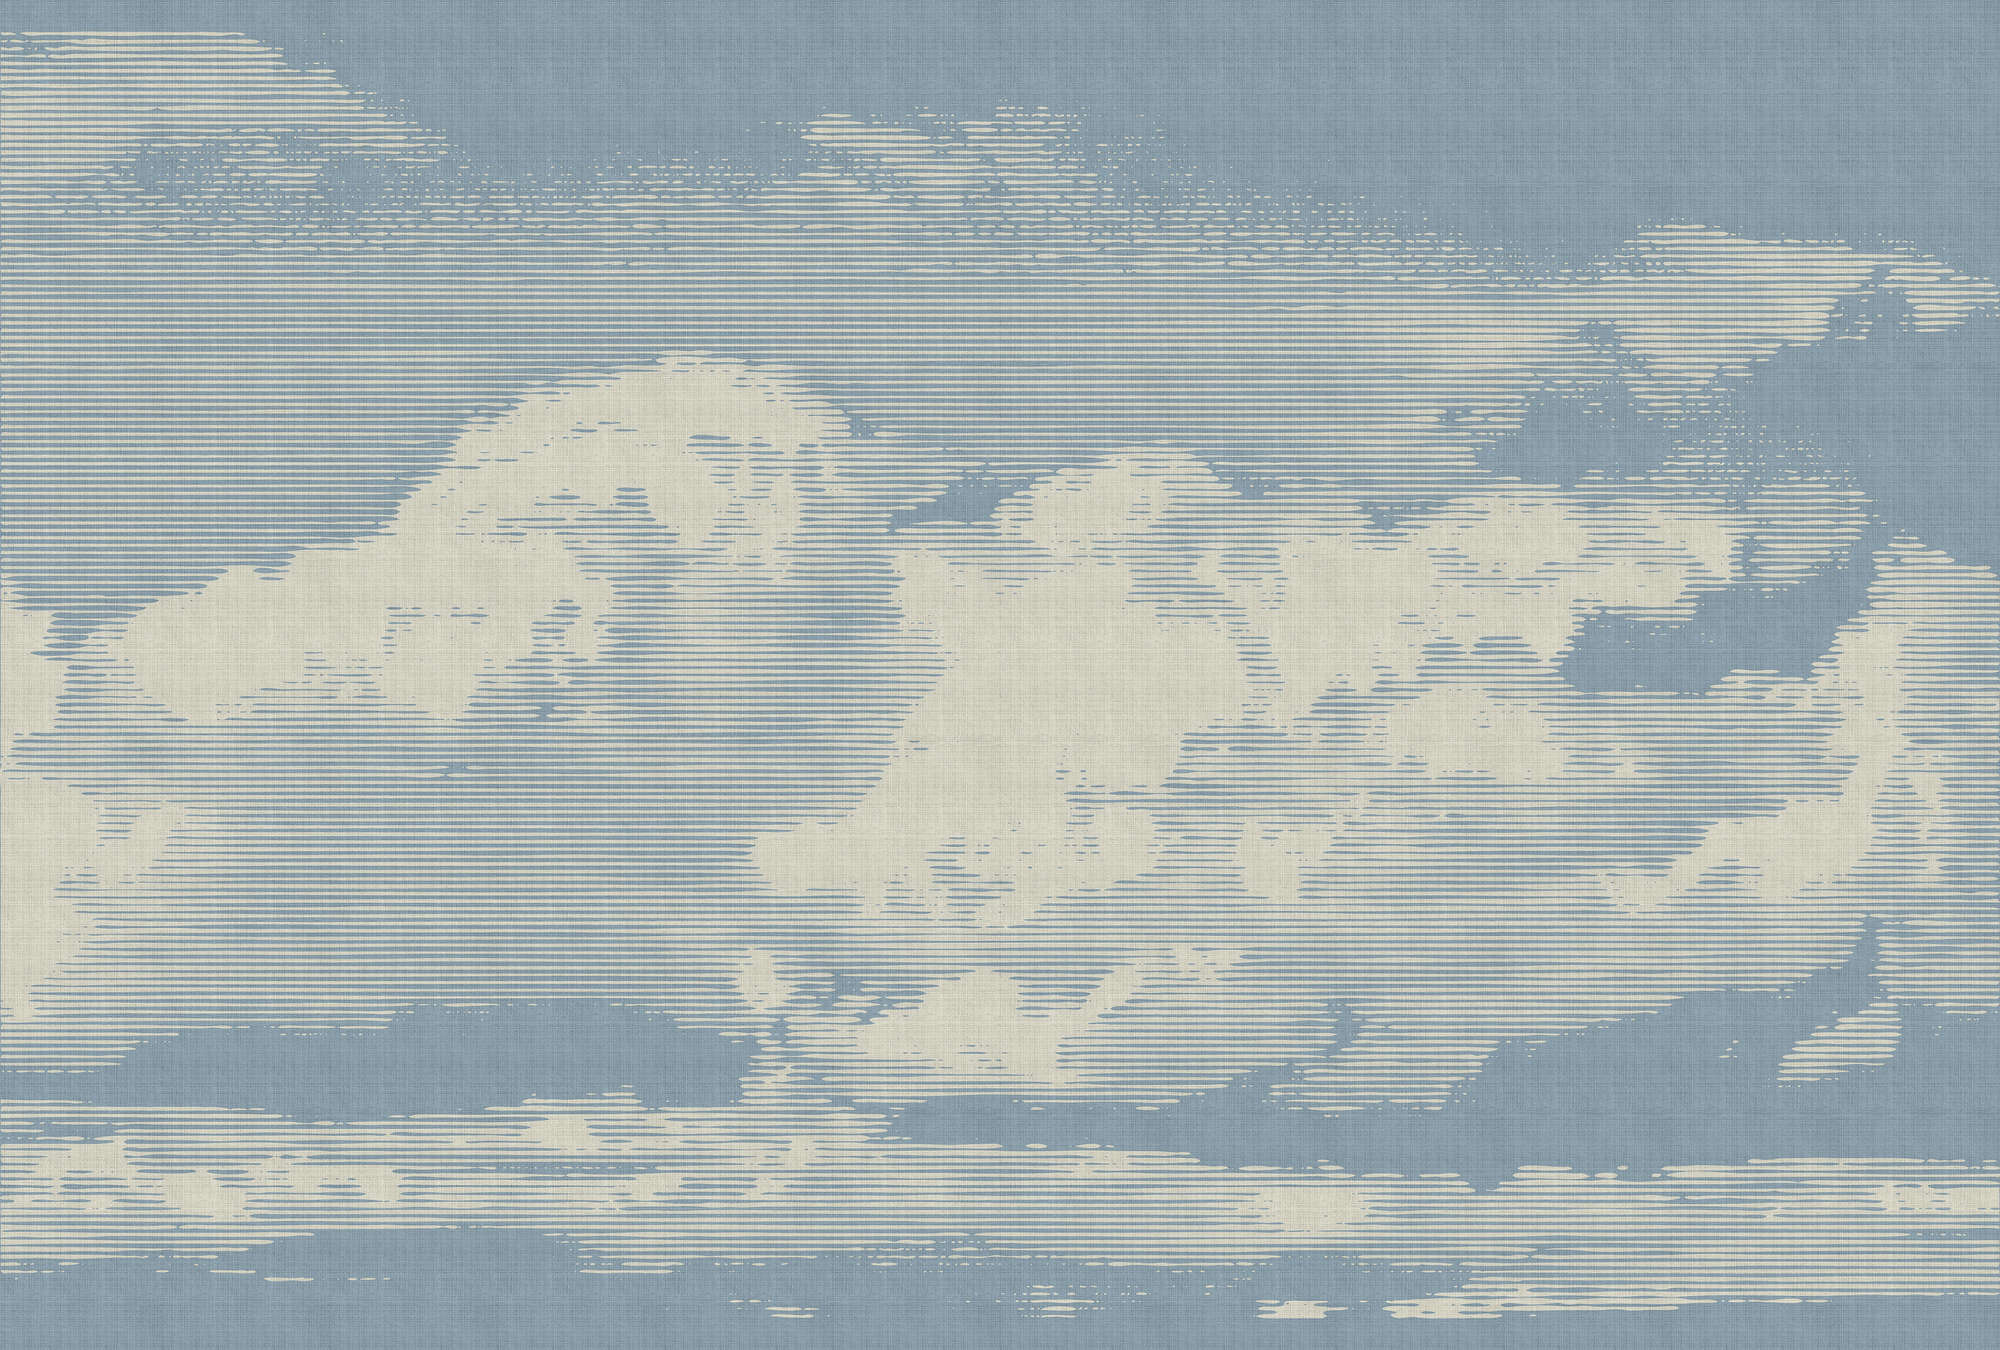             Clouds 1 - Hemels fotobehang met wolkenmotief in natuurlijke linnenstructuur - Beige, Blauw | Mat glad vlies
        